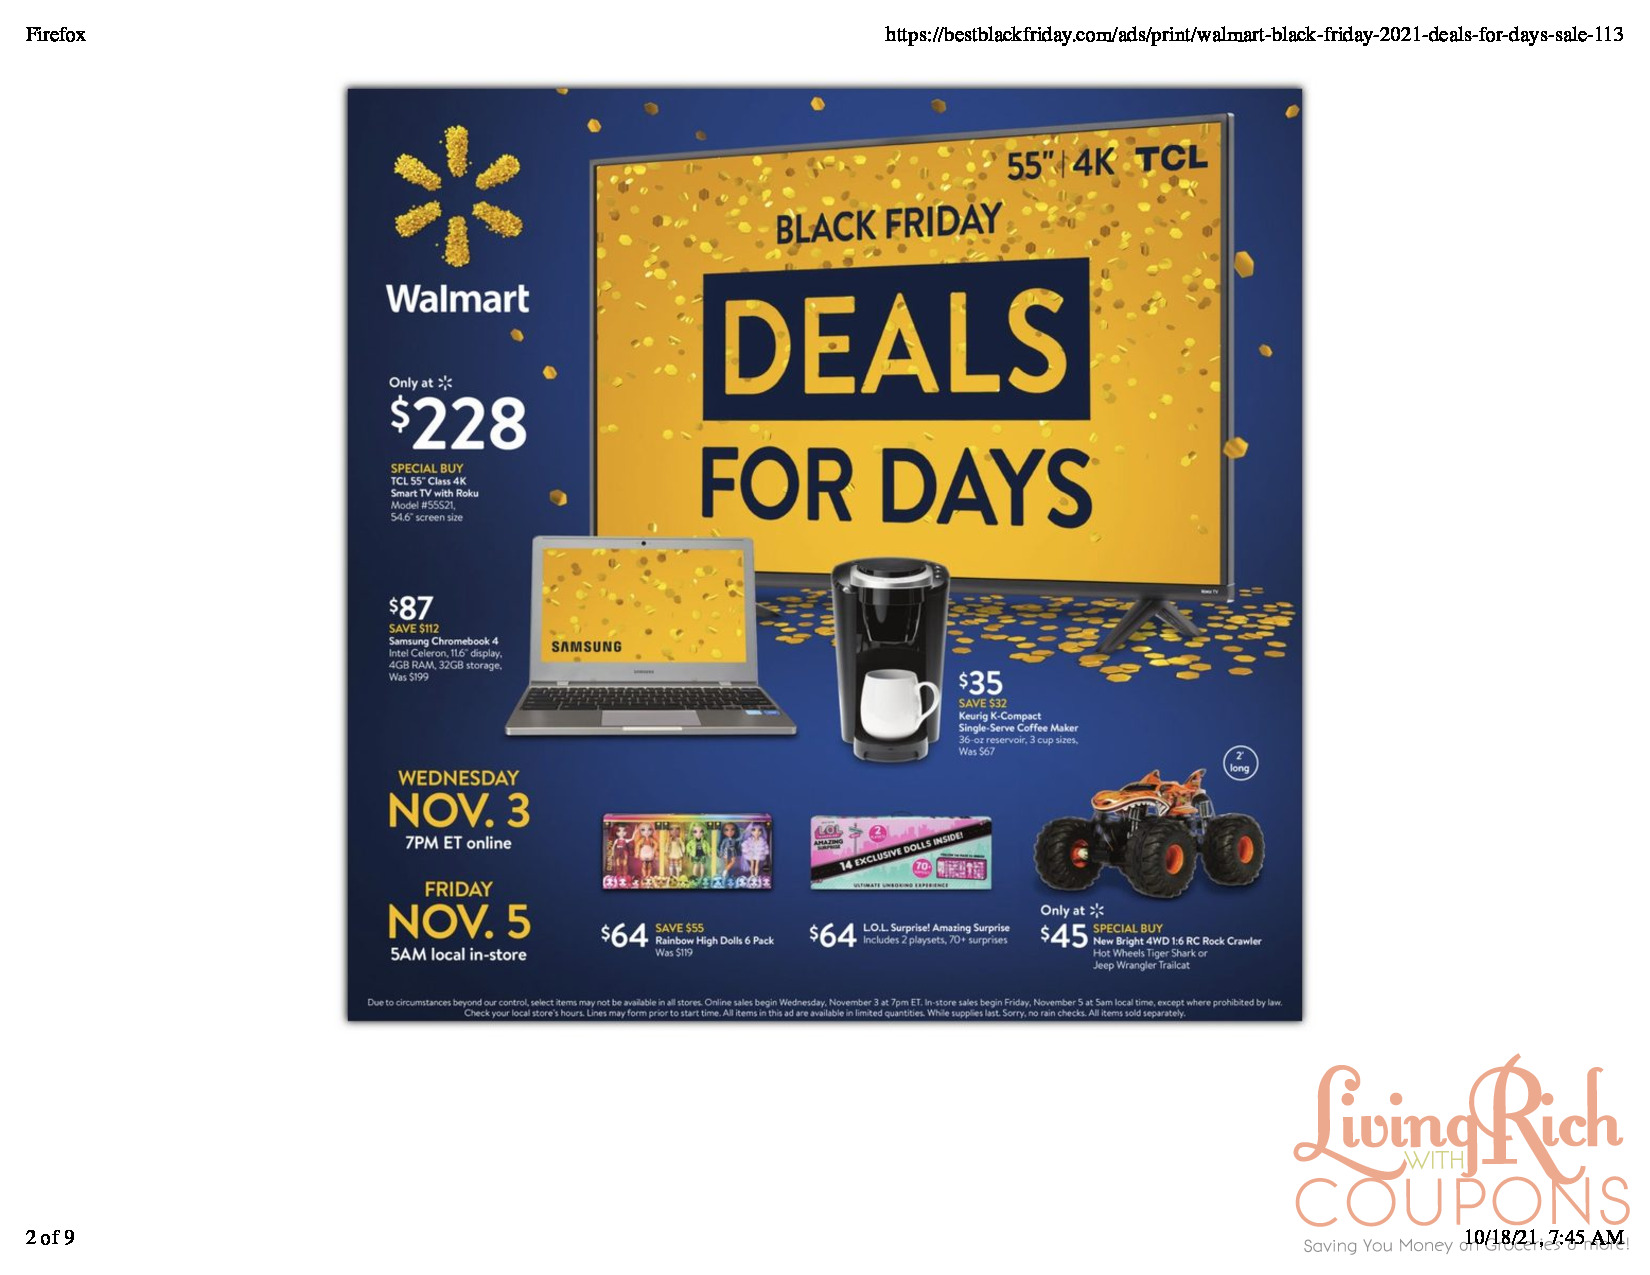 Walmart Black Friday 2021: Save on Samsung, TCL, Roku and Keurig